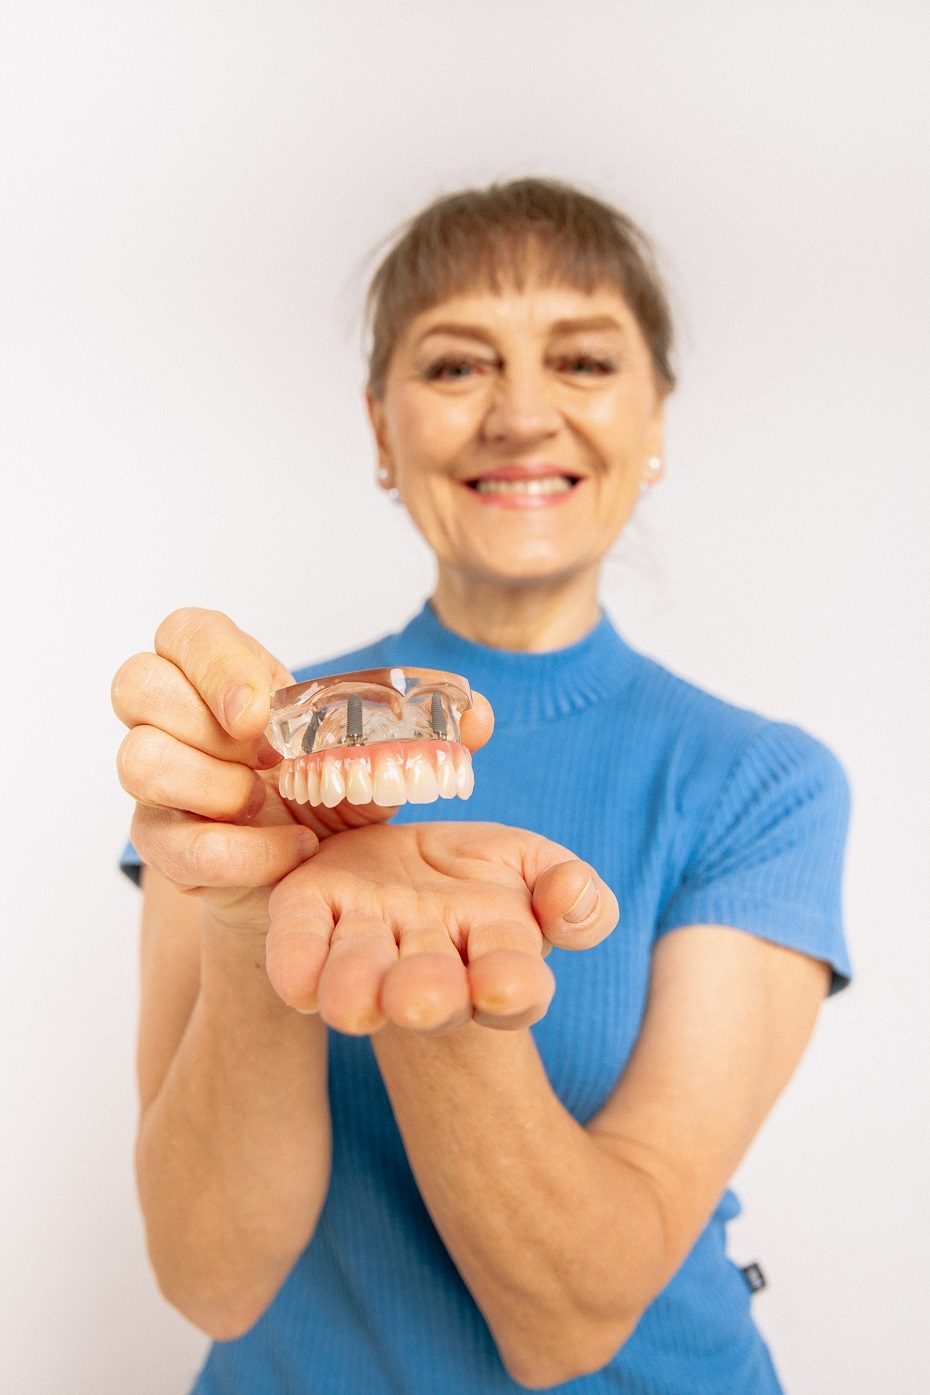 Dantų atkūrimas per parą – implantacijos laimėjimas, leidžiantis akimirksniu susigrąžinti šypseną